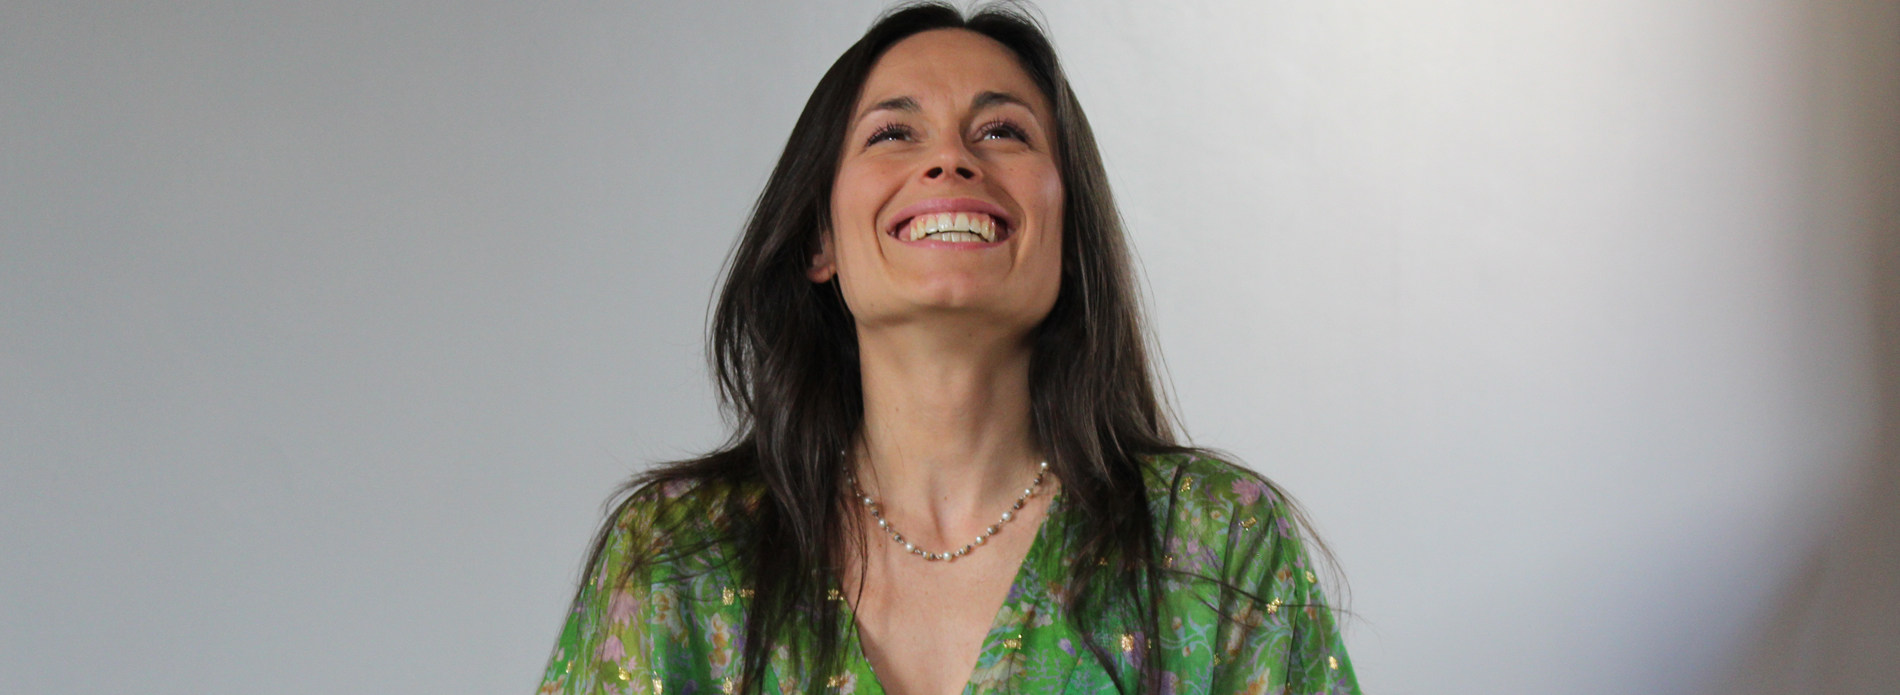 Milena Jotti, maestra di Pilates diplomata e direttrice del Centro Pilates a Locarno.